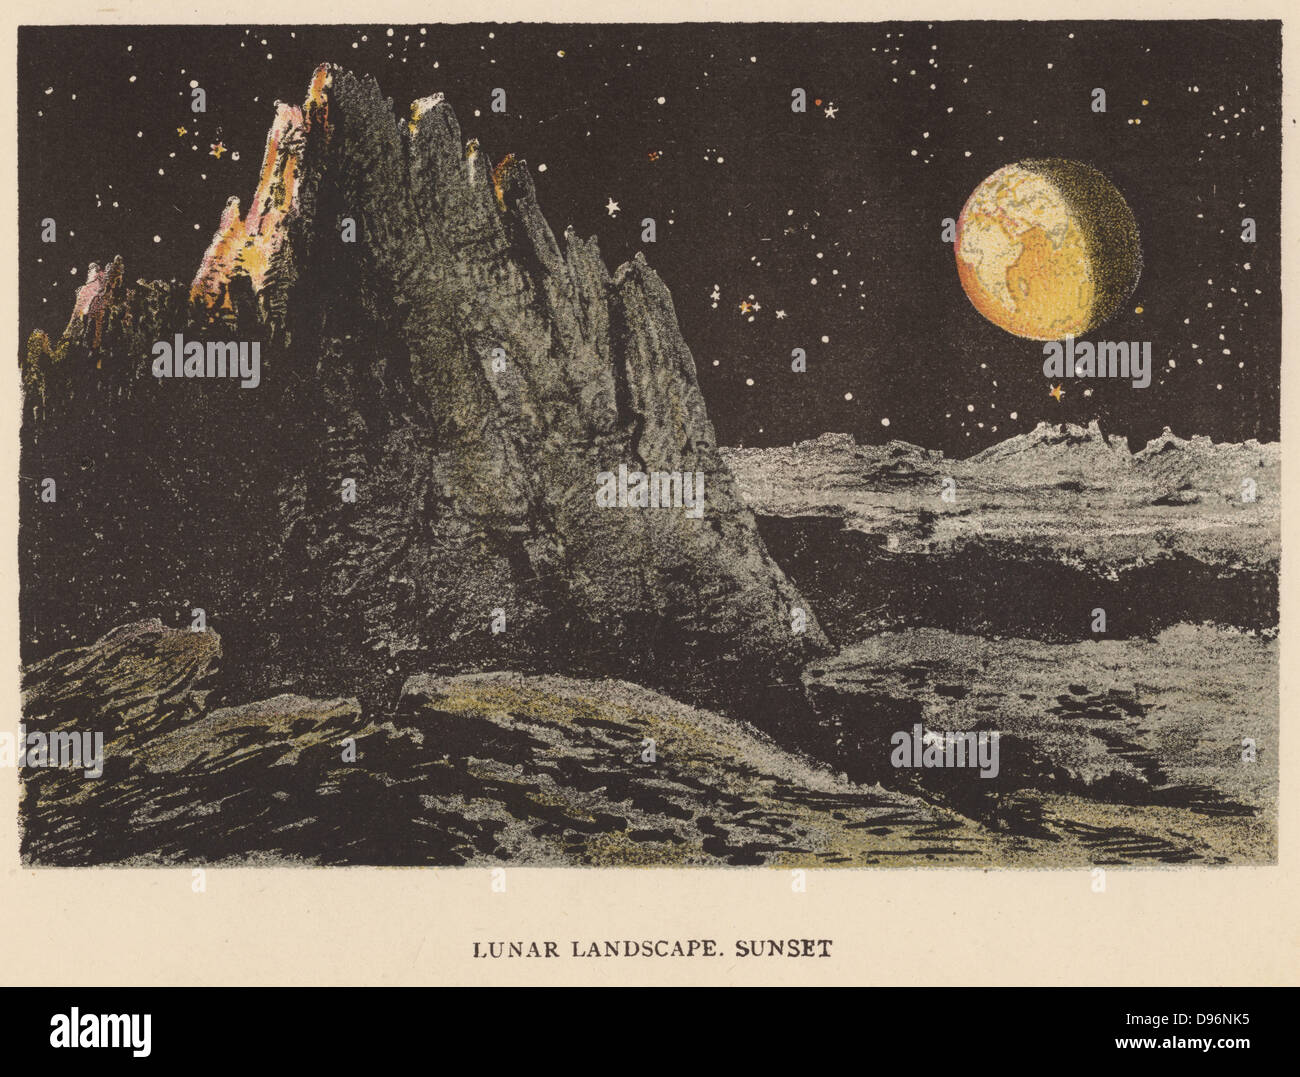 Vue d'artiste de paysage lunaire au coucher du soleil. La terre est en haut à droite. Les étoiles sont visibles dans le ciel lunaire bien qu'il n'est pas noir parce que la Lune n'a pas d'atmosphère pour diffuser la lumière. De Sun, Moon and Stars', Agnès Giberne (Londres, 1884). Chromolithographie. Banque D'Images